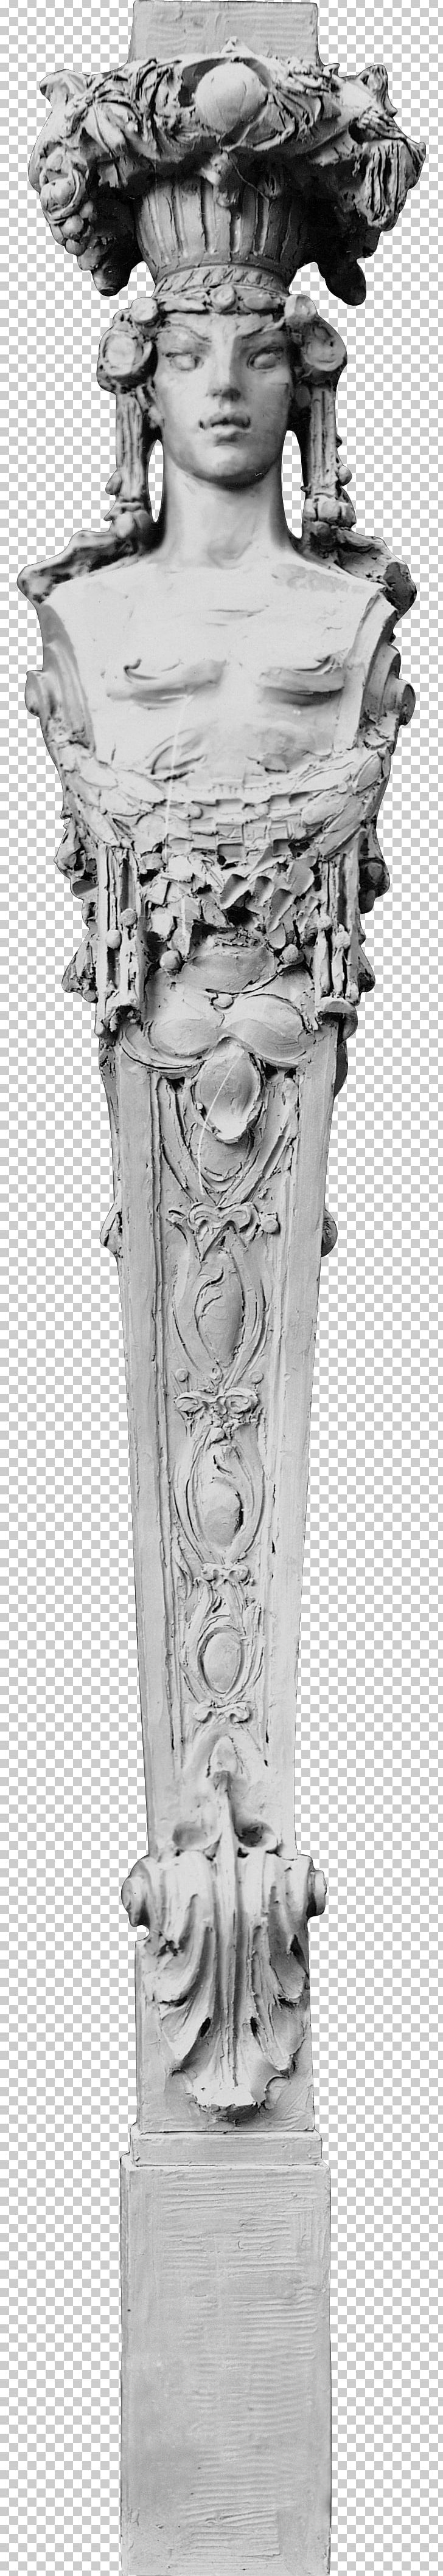 Sculpture Column Architecture Statue PNG, Clipart, Architecture, Column, Desktop Wallpaper, Digital Image, Monochrome Free PNG Download